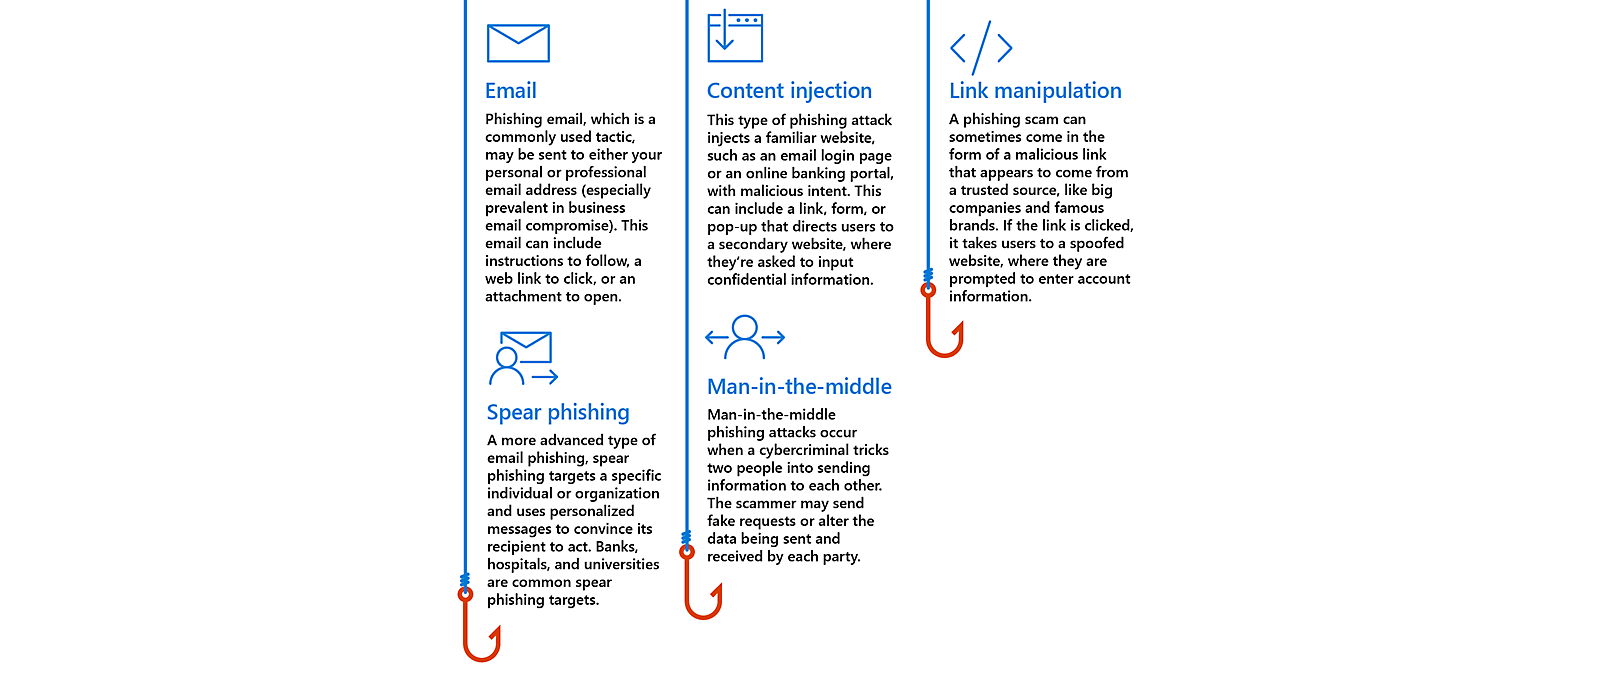 Imagem a descrever ataques comuns de phishing (e-mail, injeção de conteúdo, manipulação de ligações, ataque spear phishing e man-in-the-middle)